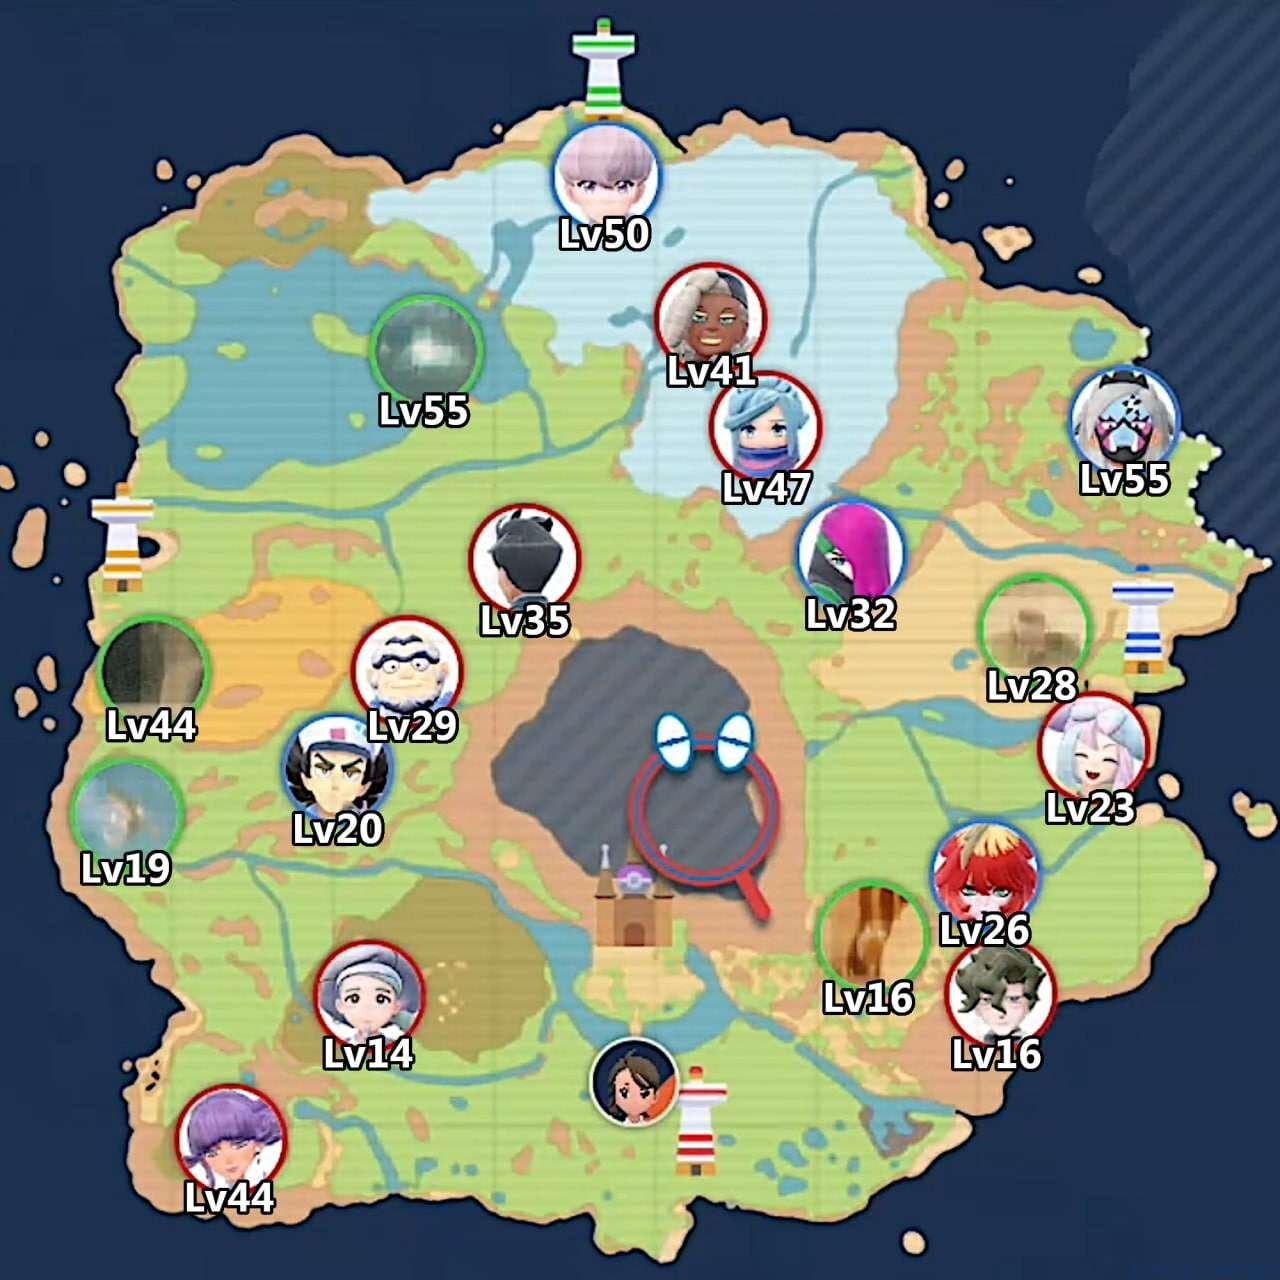 Guía Pokémon Escarlata y Púrpura: Orden y Gimnasios por nivel